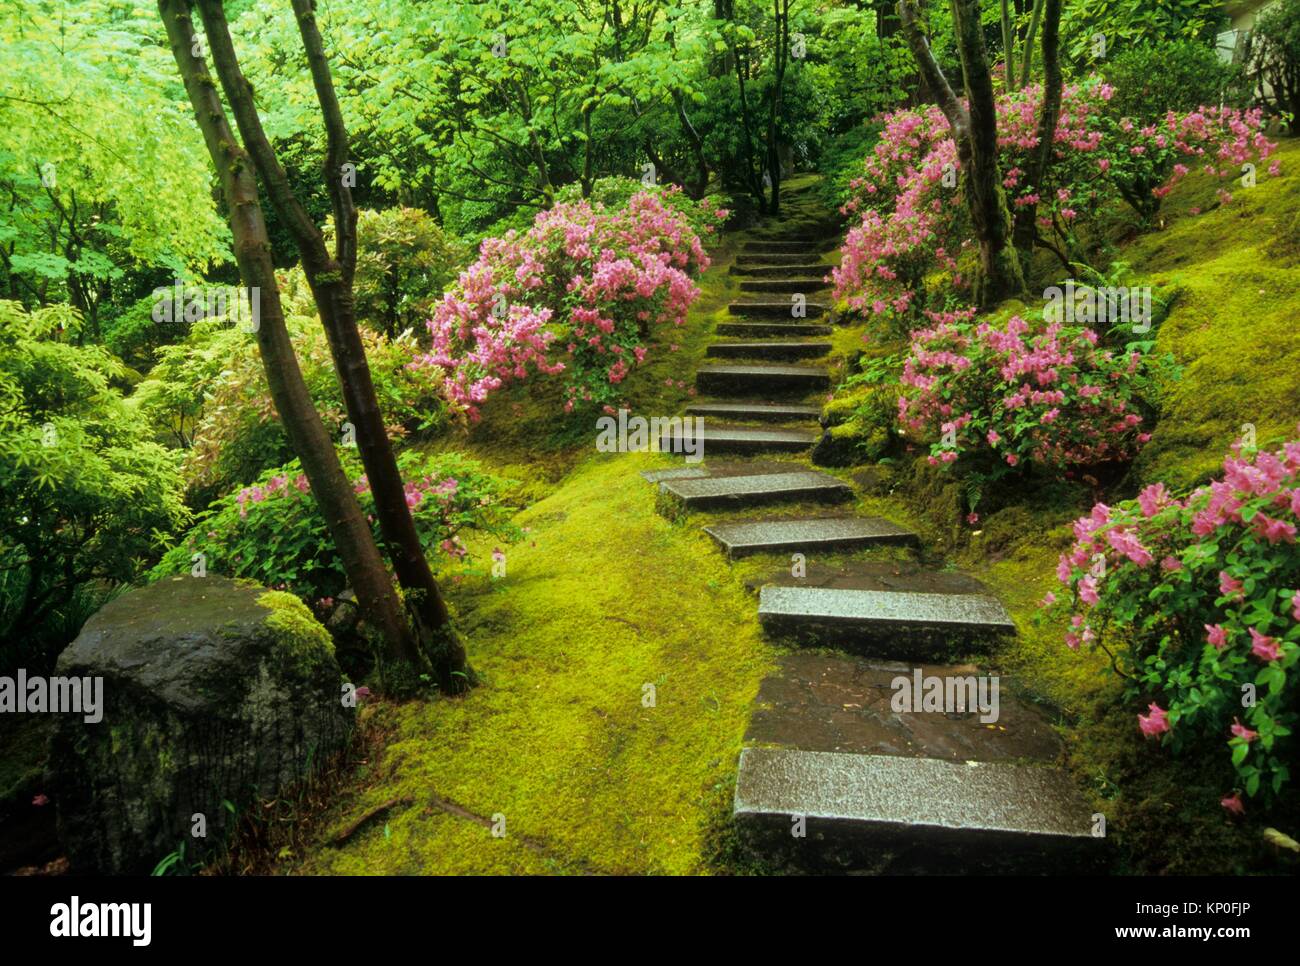 natural garden stairway, portland japanese garden, washington park